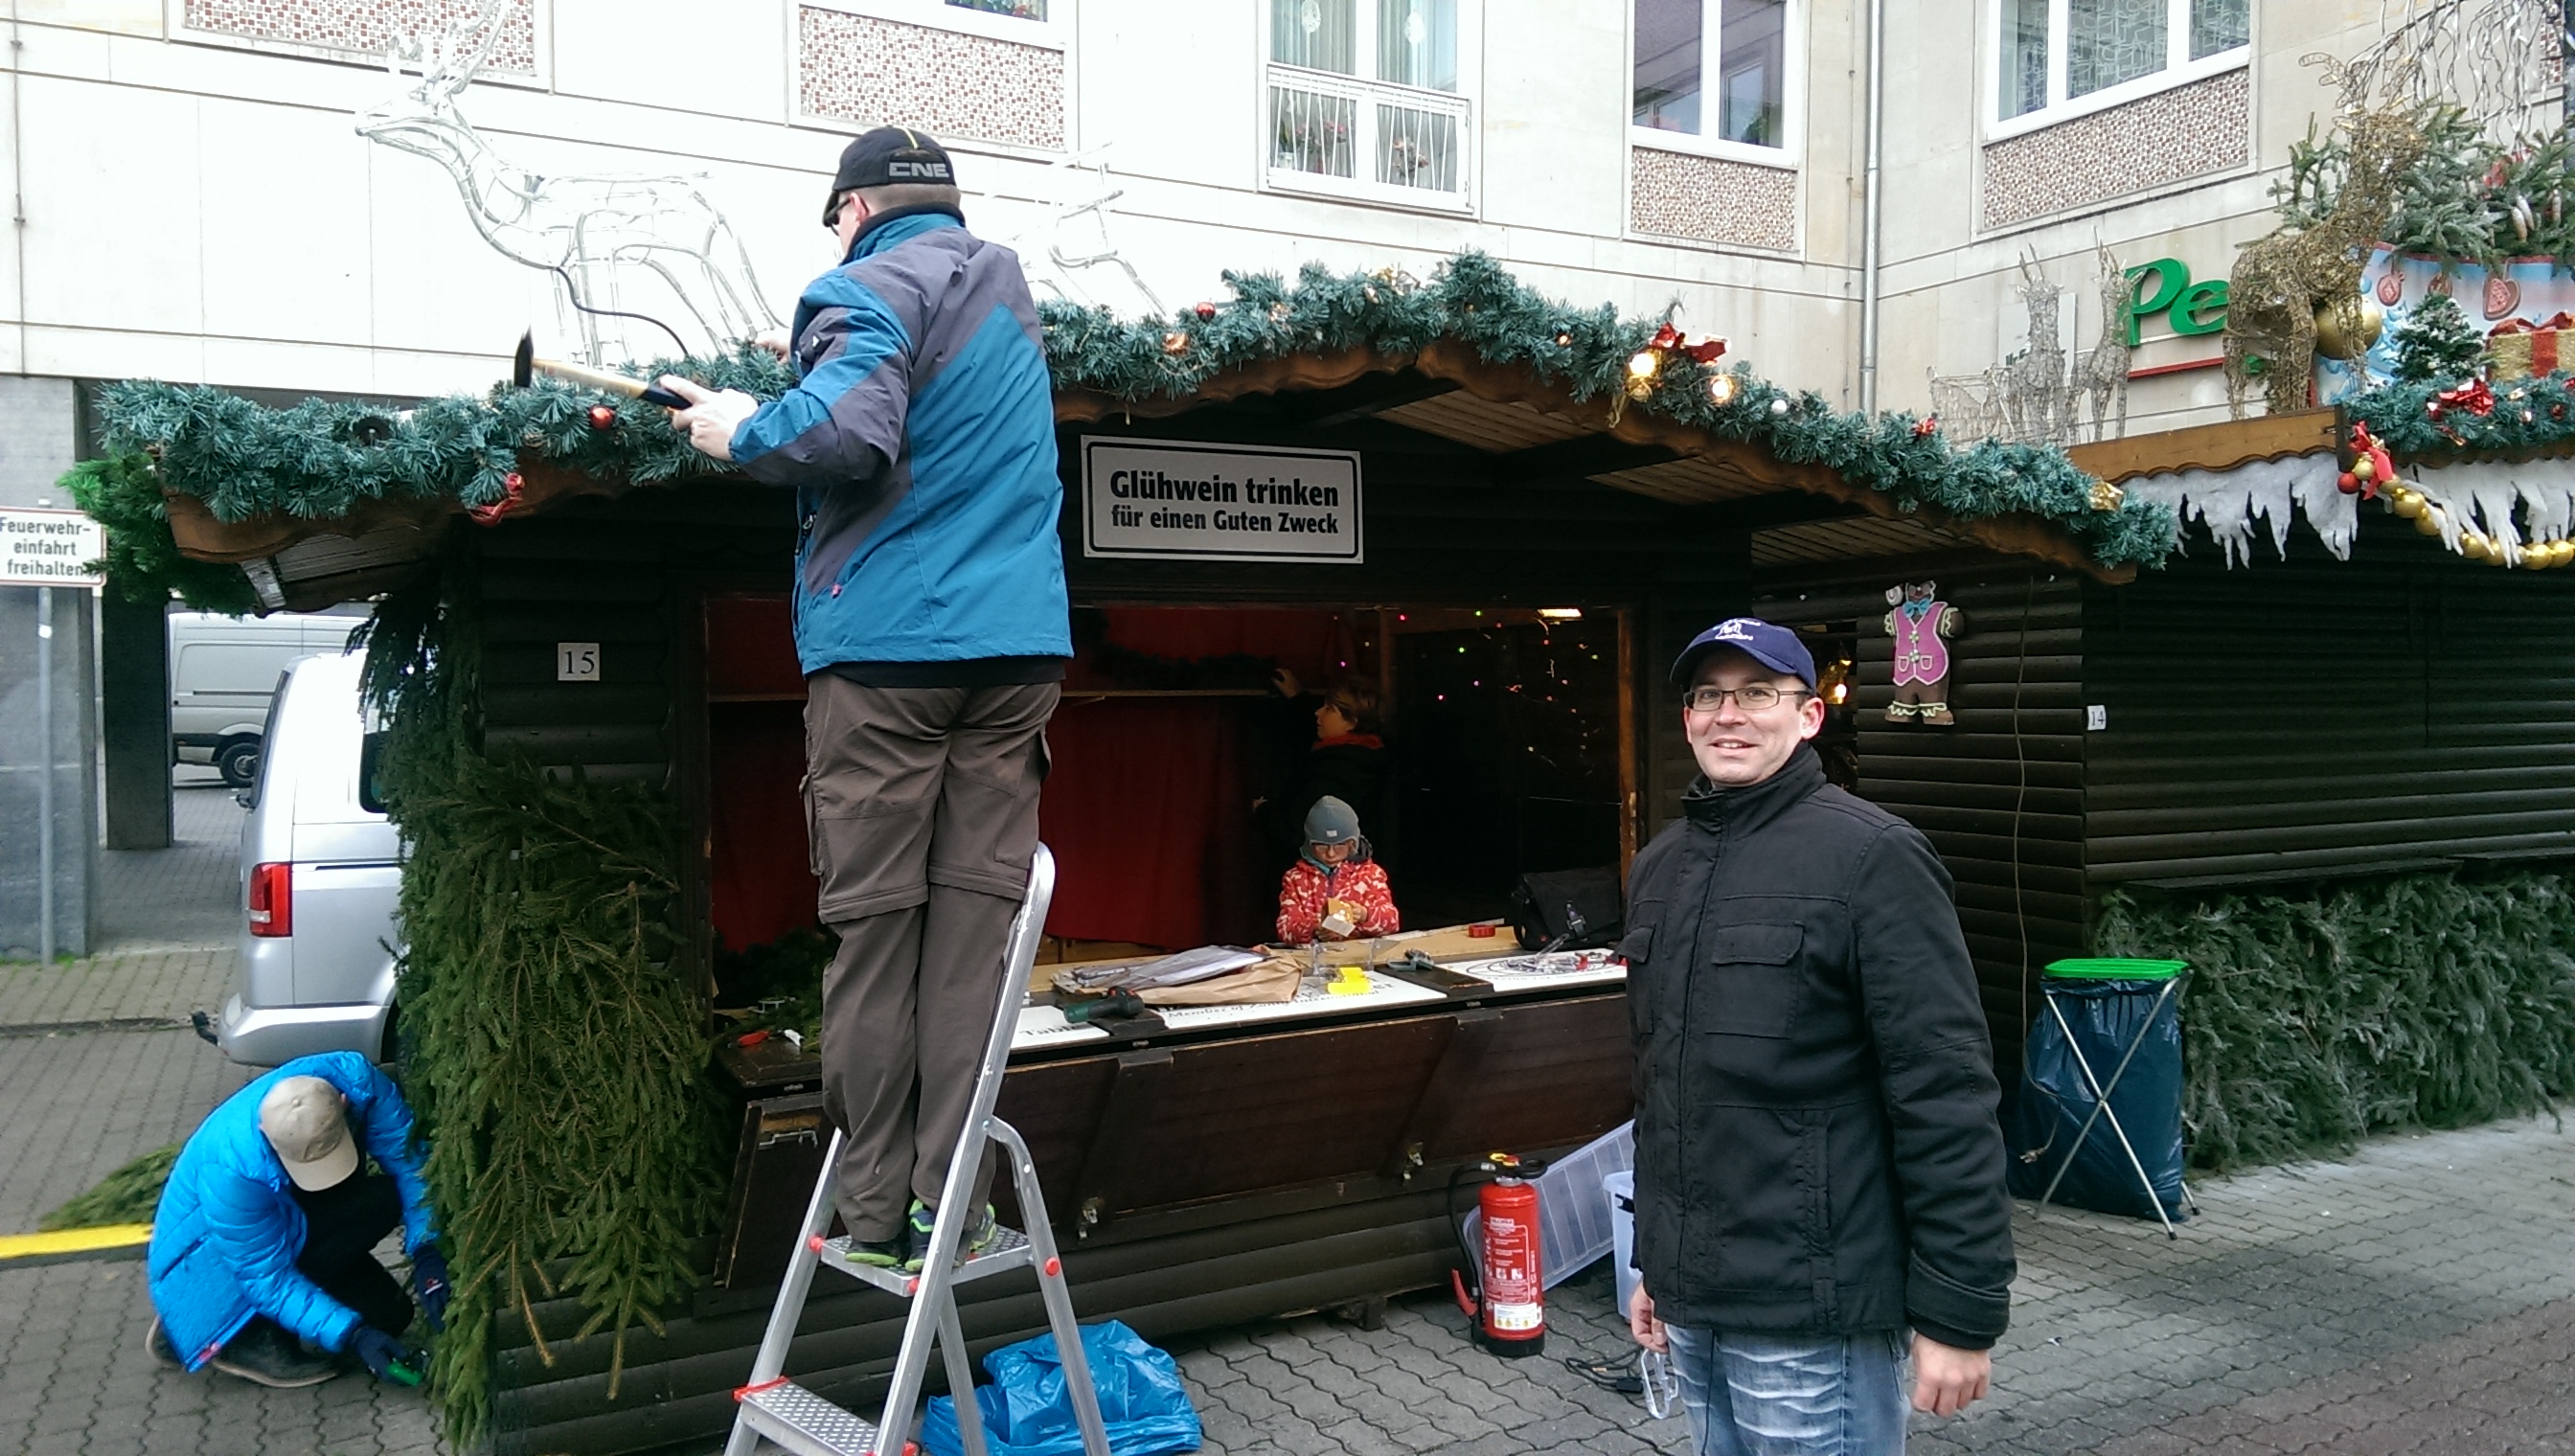 Zonta Club Leipzig Elster Glühweinstand auf dem Leipziger Weihnachtsmarkt im Salzgässchen